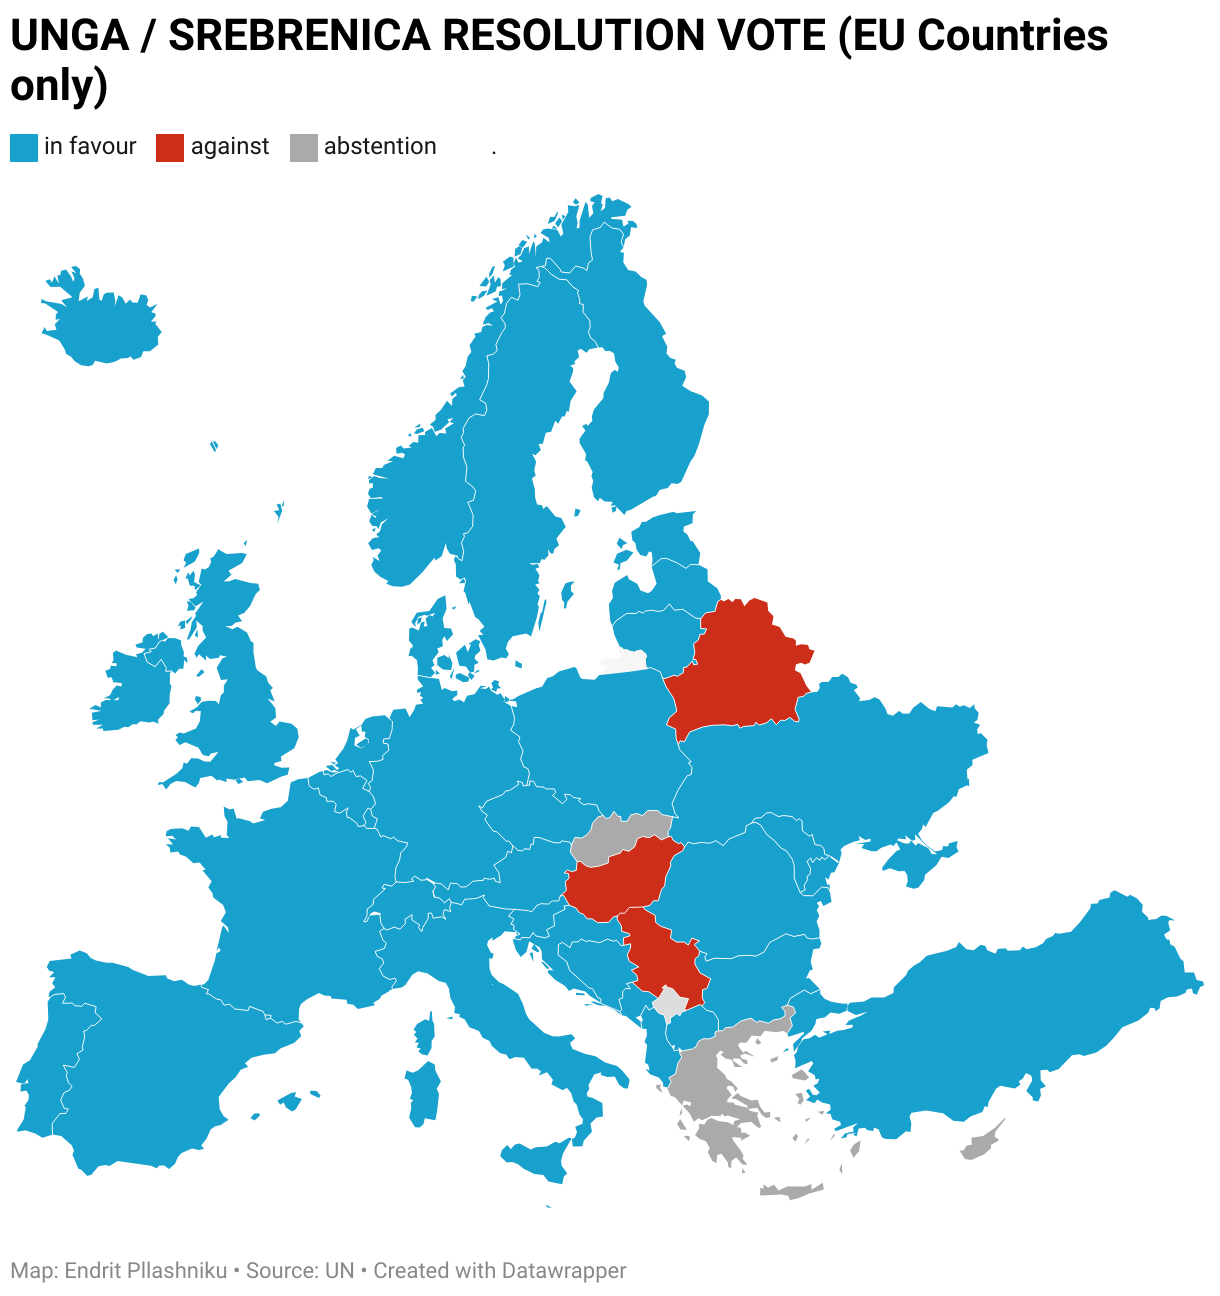 A srebrenicai népirtás nemzetközi emléknapja ellen szavazó európai országok: Magyarország, Szerbia, Belarusz és a térképen nem látszódó Oroszország.